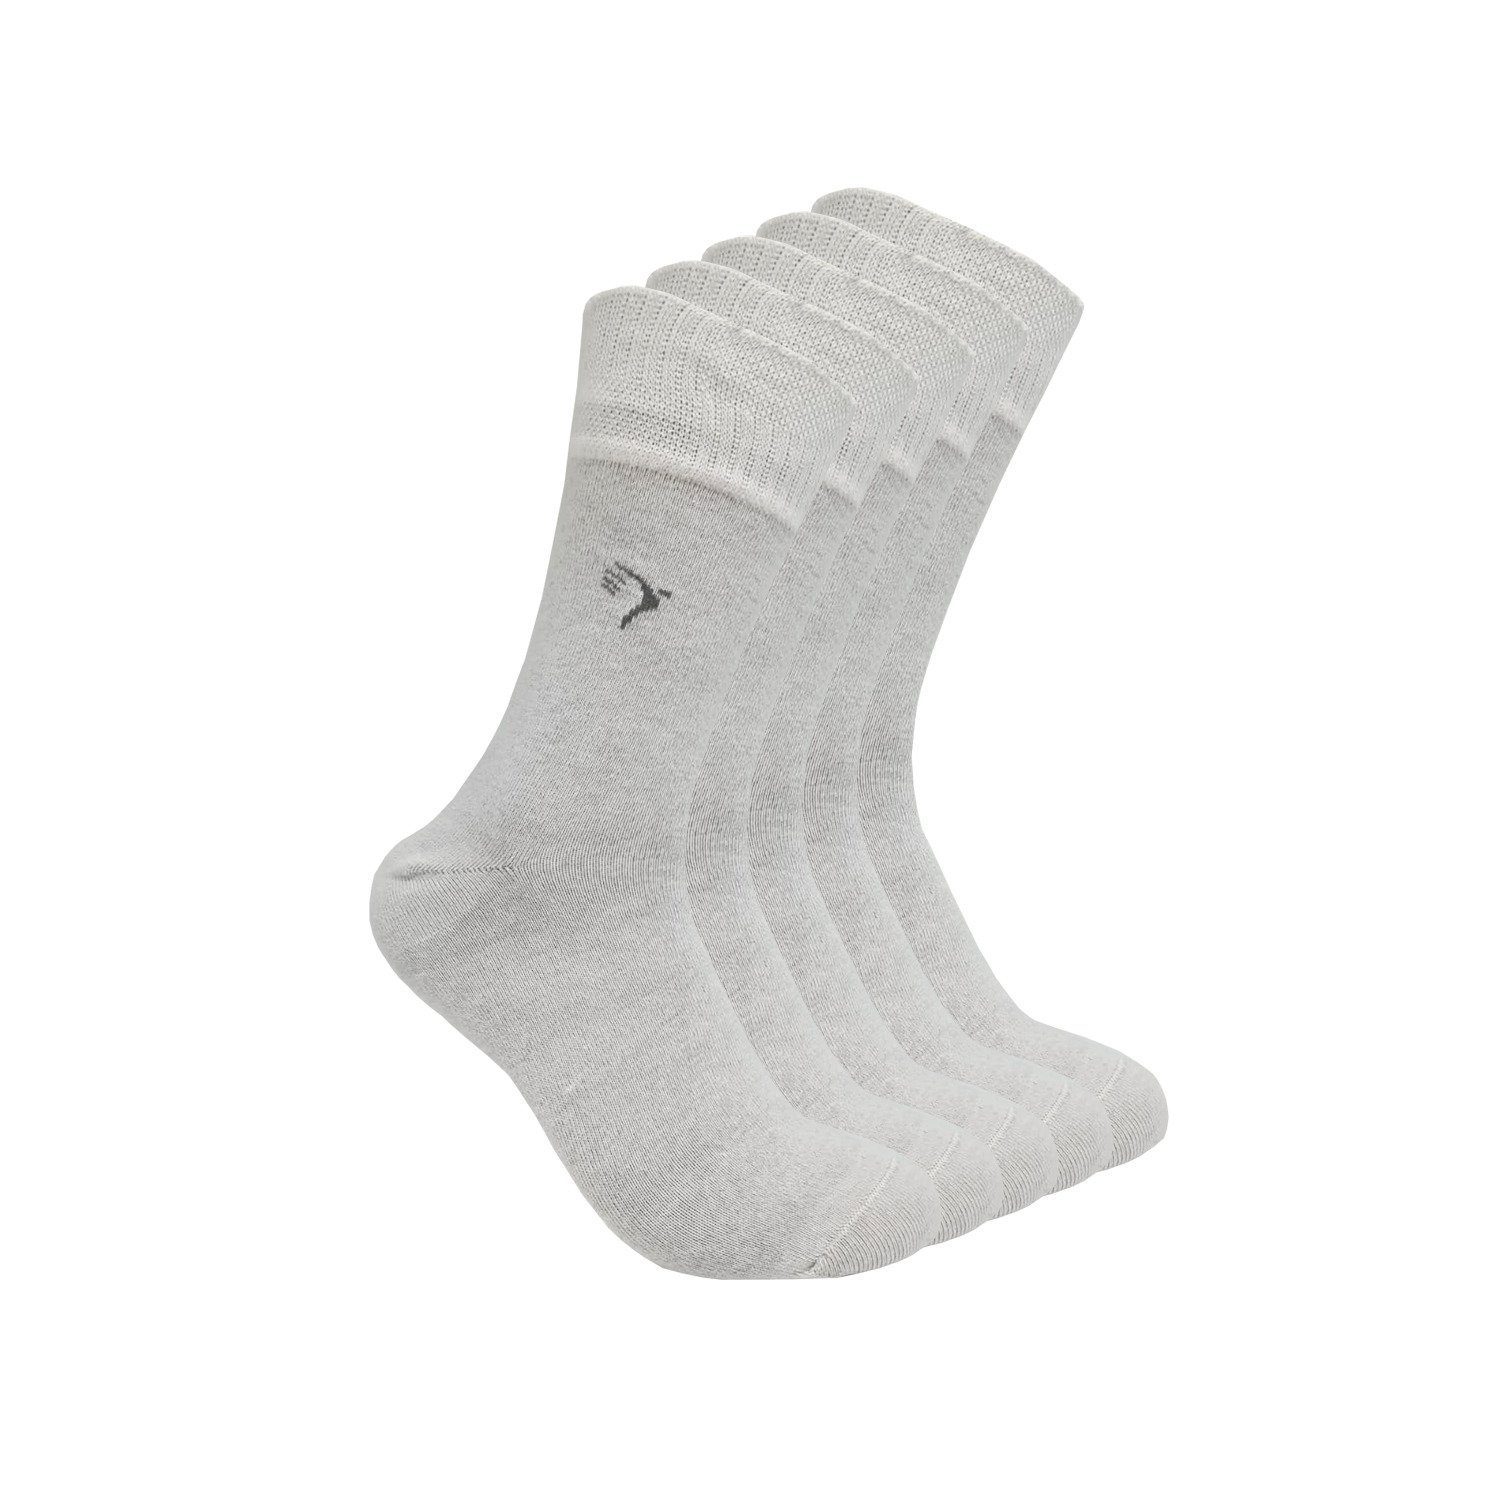 Komfortbund weiß 10% Gummi) (5-Paar) Socken mit Lindner Antibakterielle (ohne Max Silbersocken, Diabetikersocken, Silbergarn